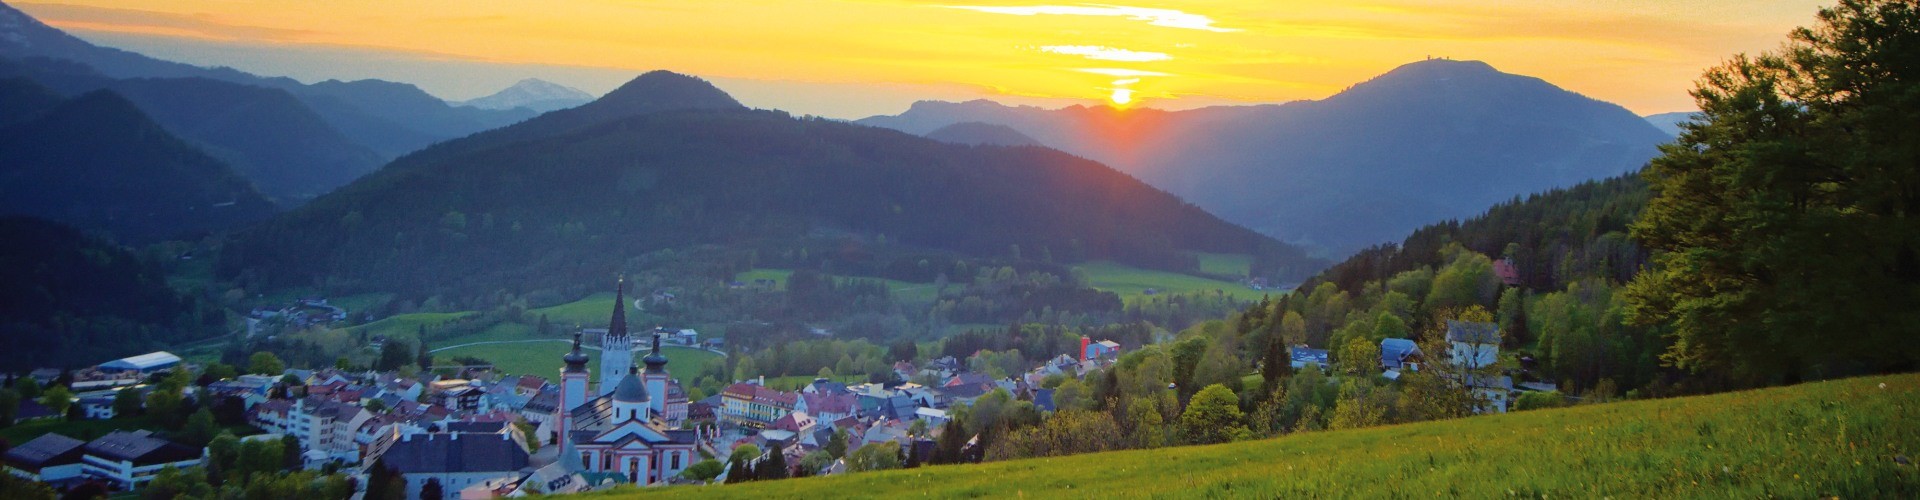 Ein Sonnenuntergang in Mariazell Via Maria, der Partnerstadt von Altötting.